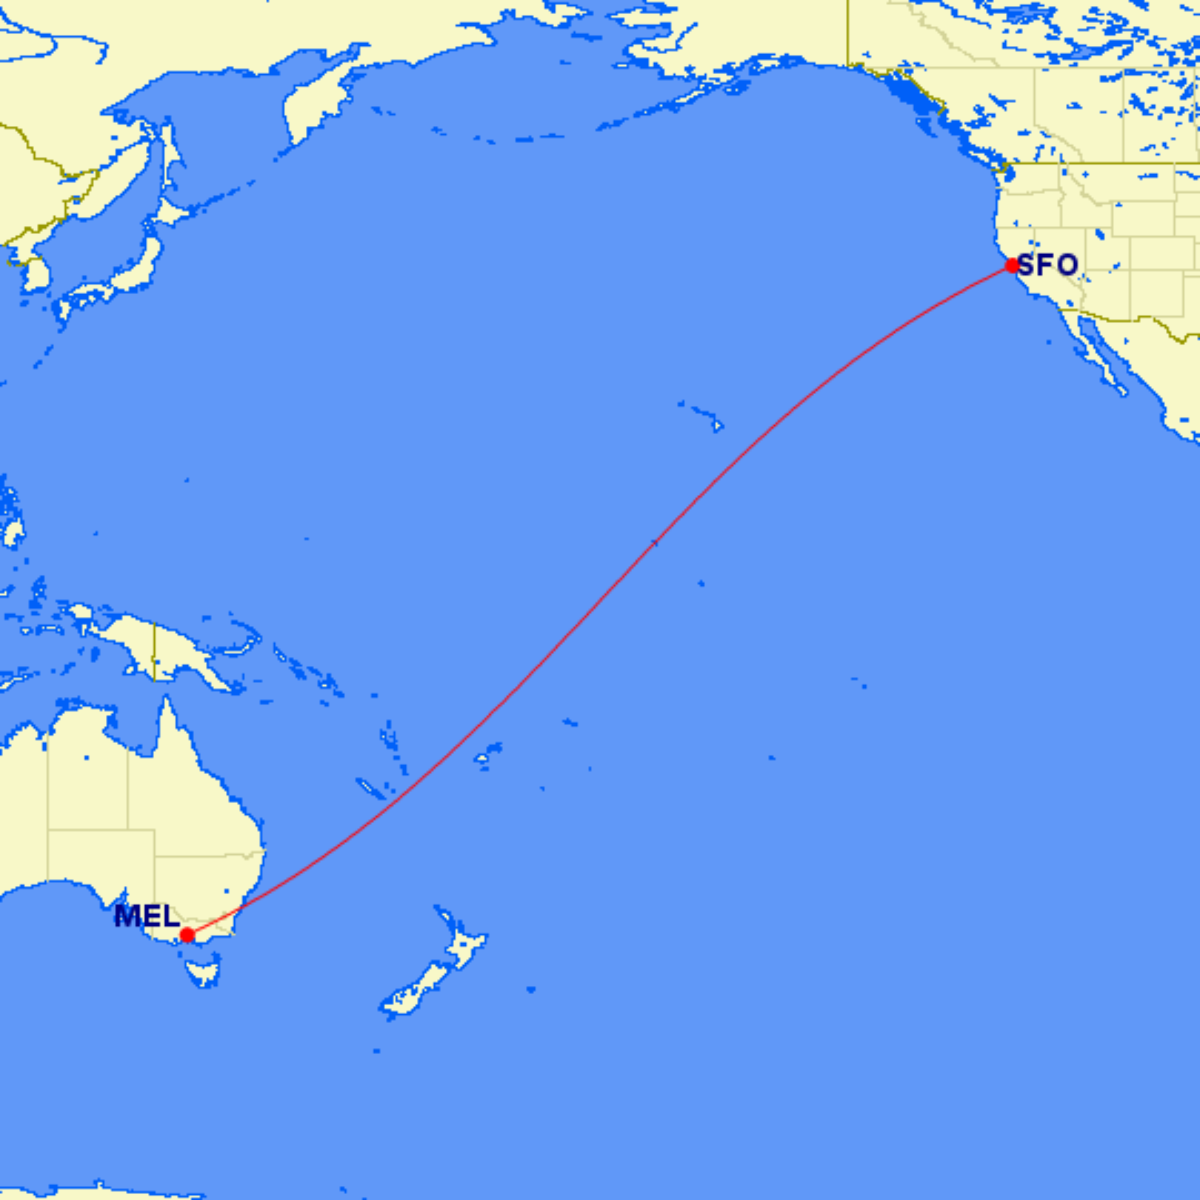 Melbourne - San Francisco route